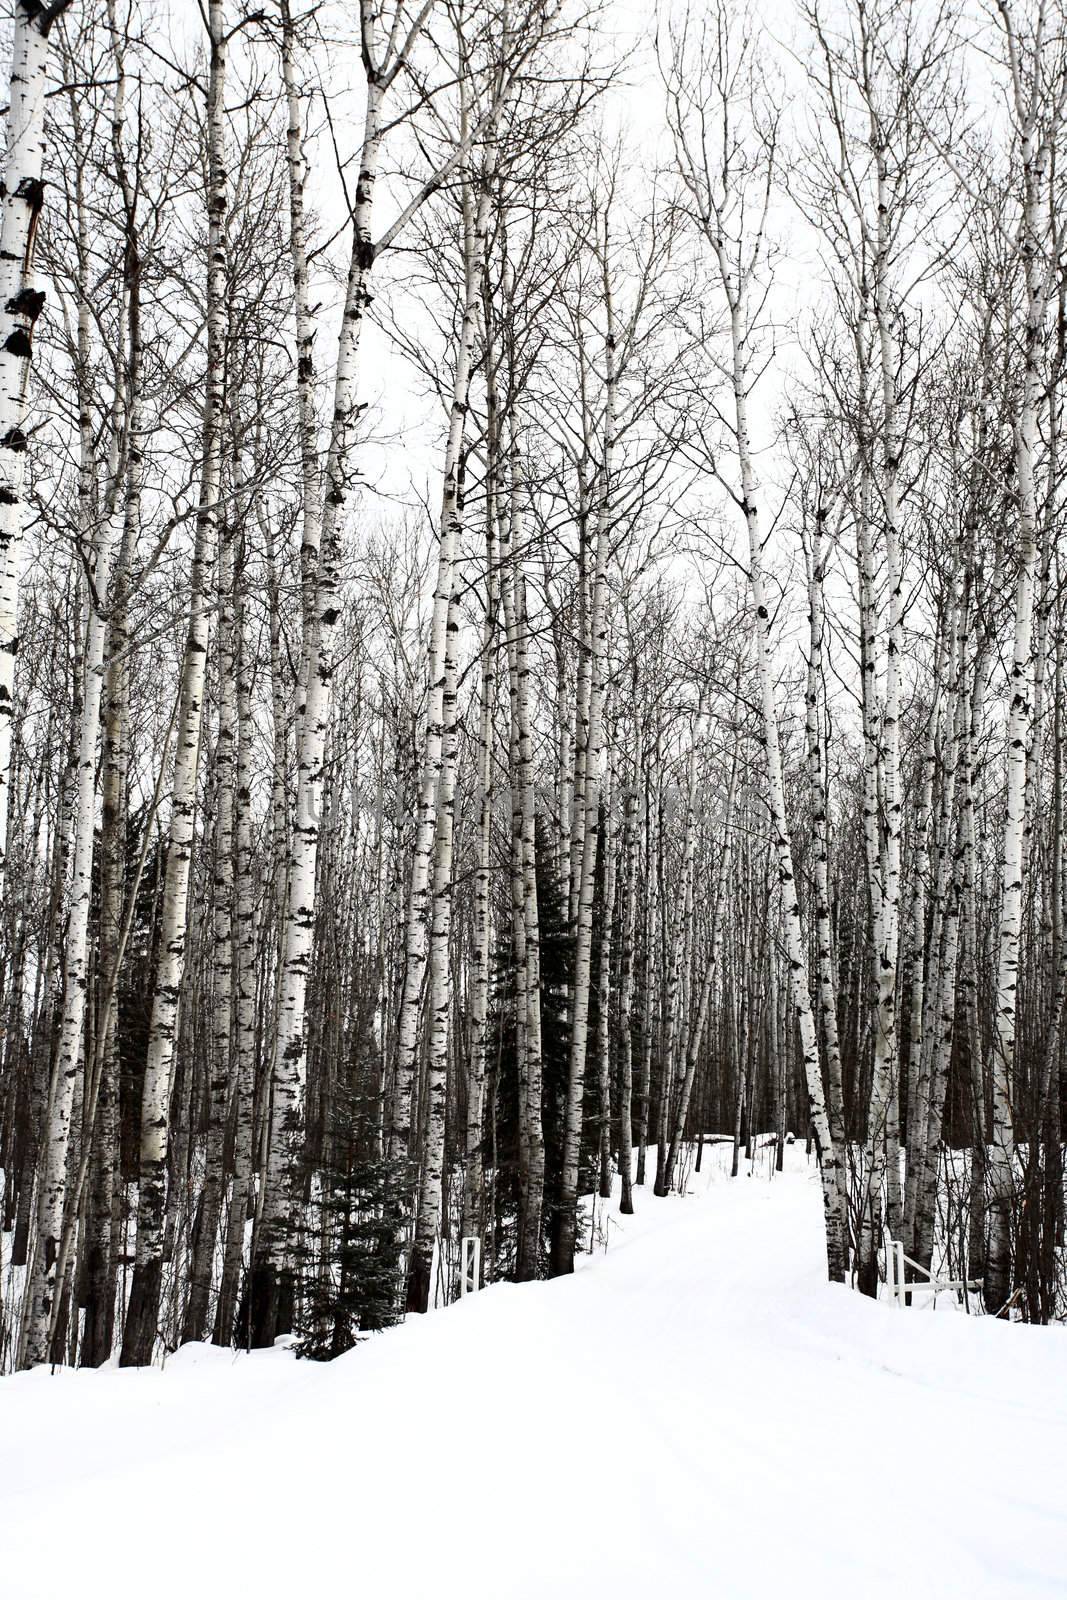 Aspen trees Saskatchewan in Winter by pictureguy